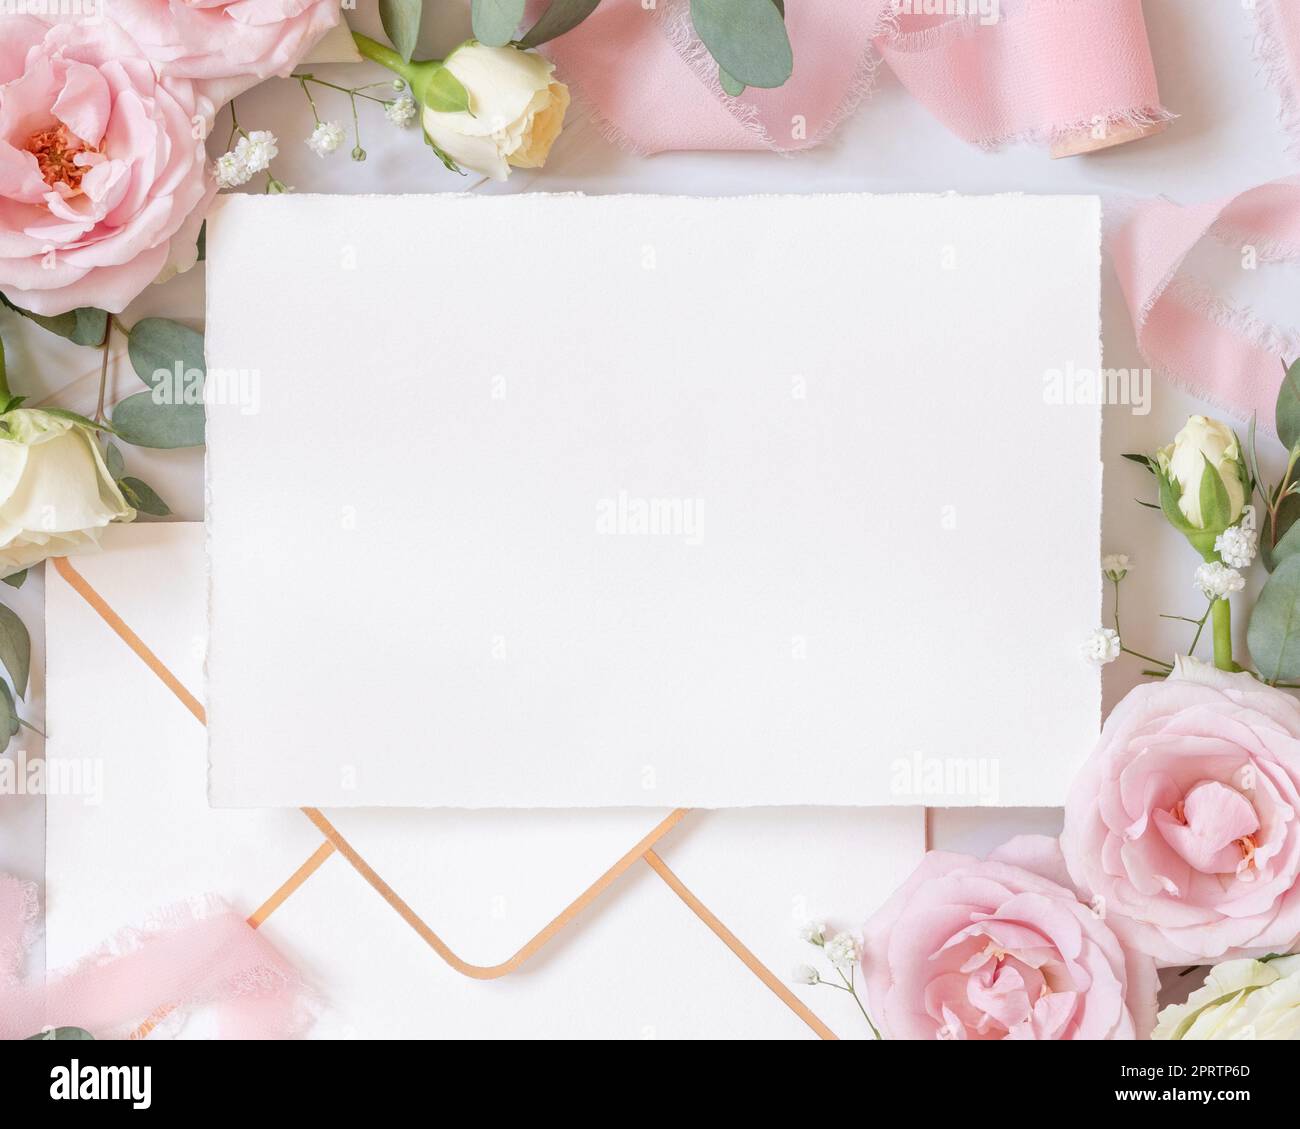 Leere Karte zwischen pinkfarbenen Rosen und pinkfarbenen Seidenbändern, Draufsicht, Hochzeitsmodell Stockfoto